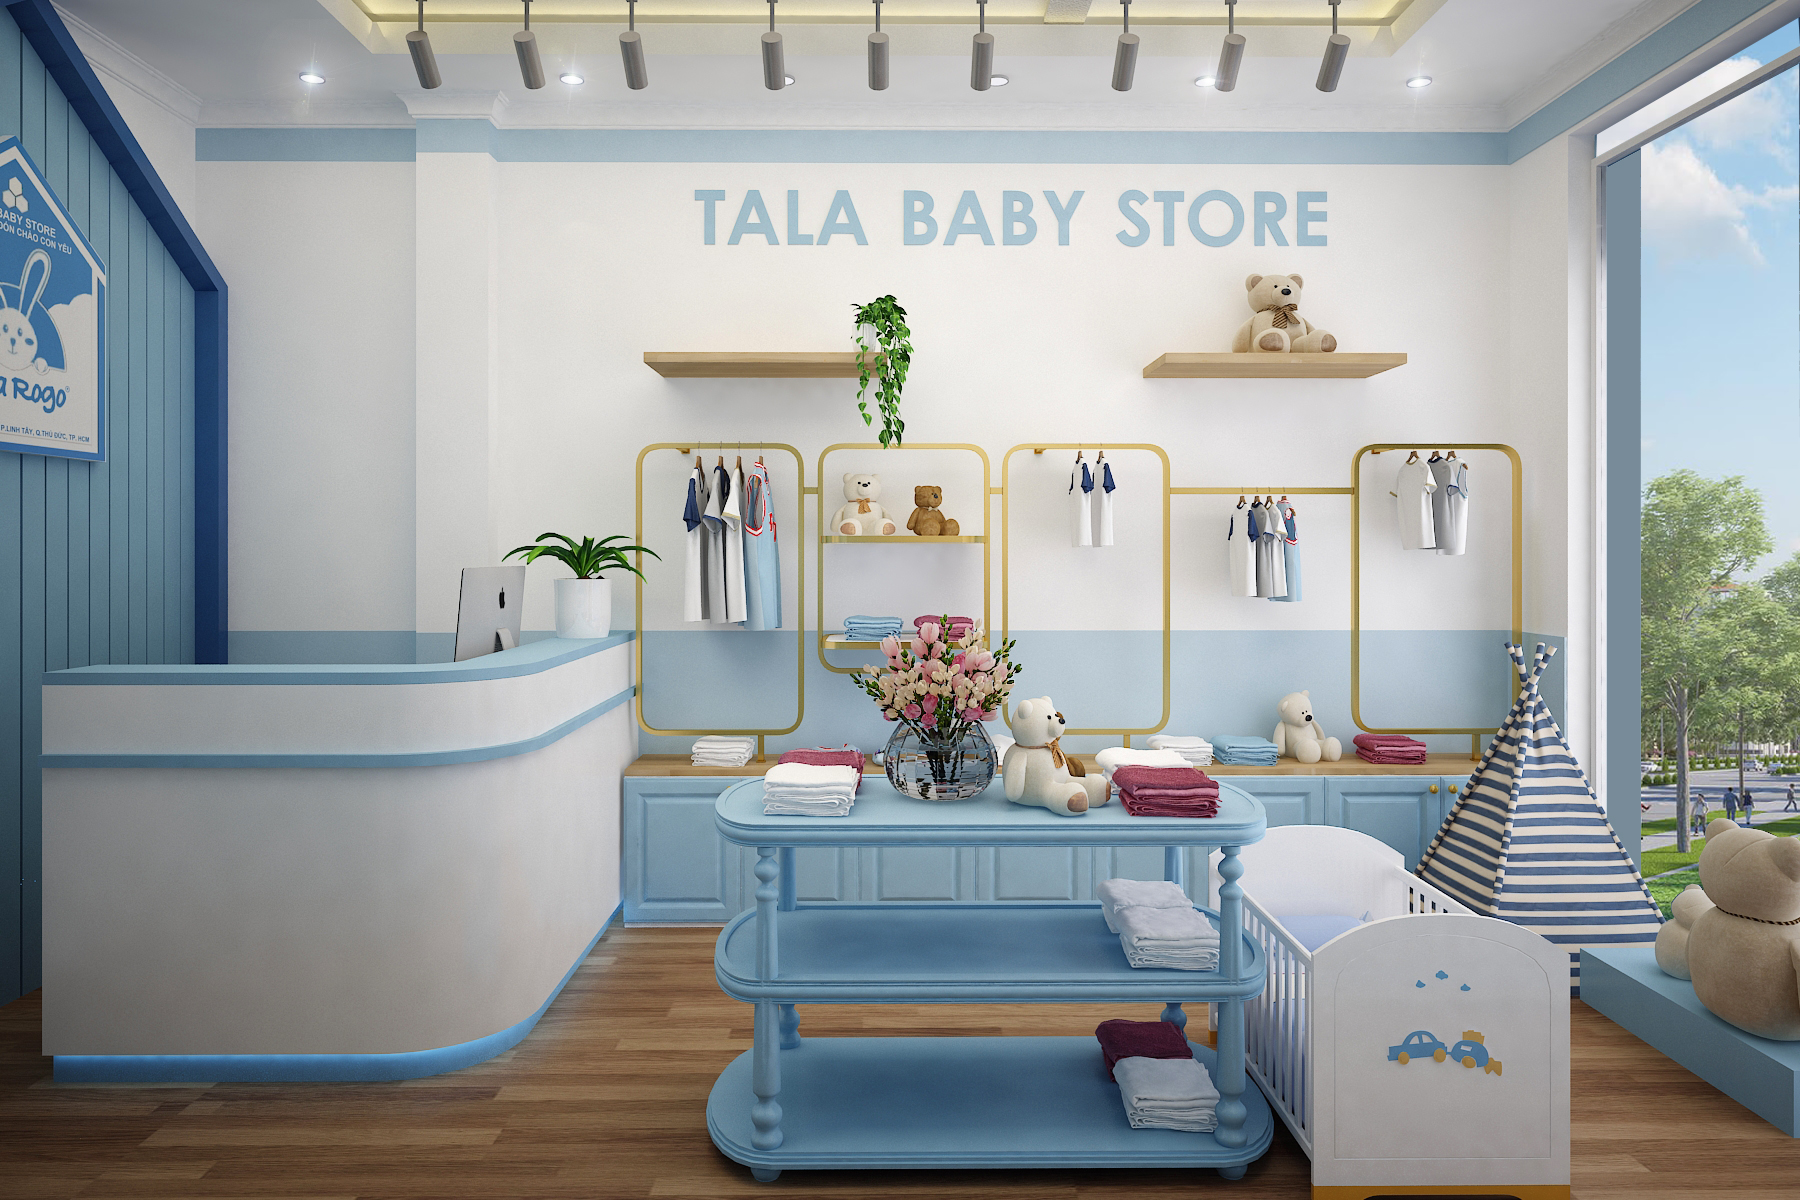 Tala Baby Store